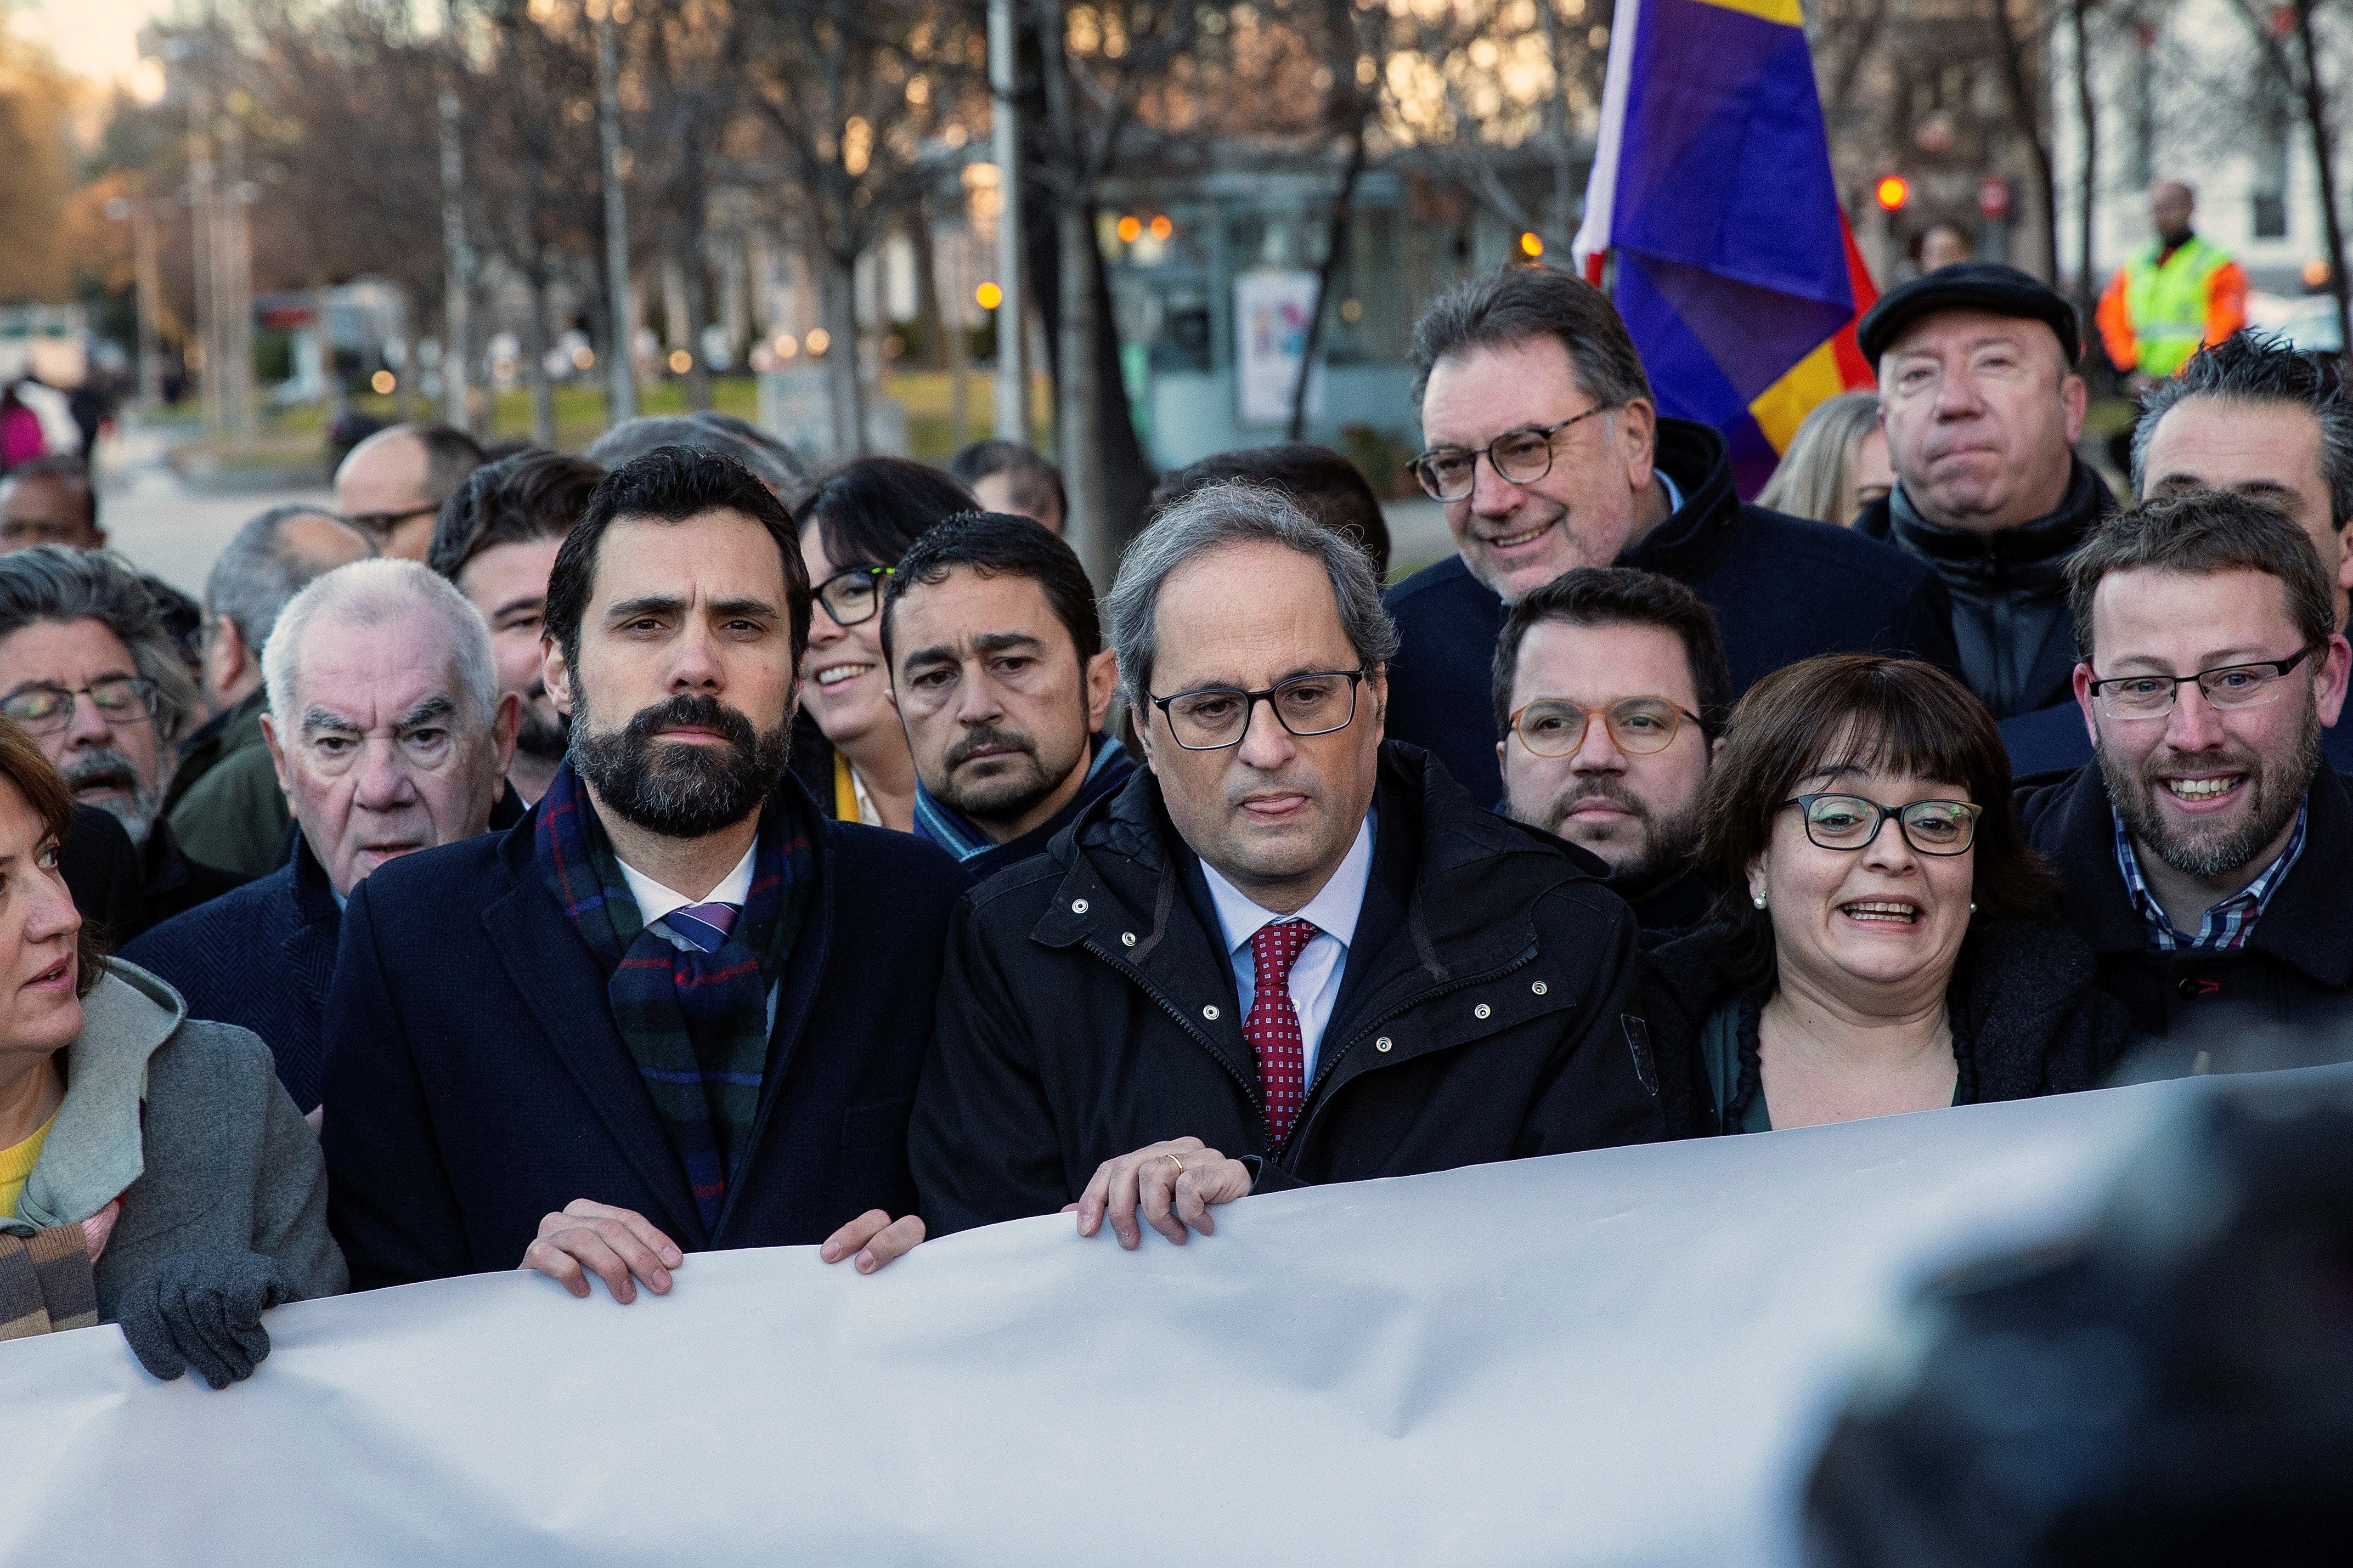 Instituciones, partidos y entidades, en Madrid: "A pesar de los días duros, no nos rendiremos"